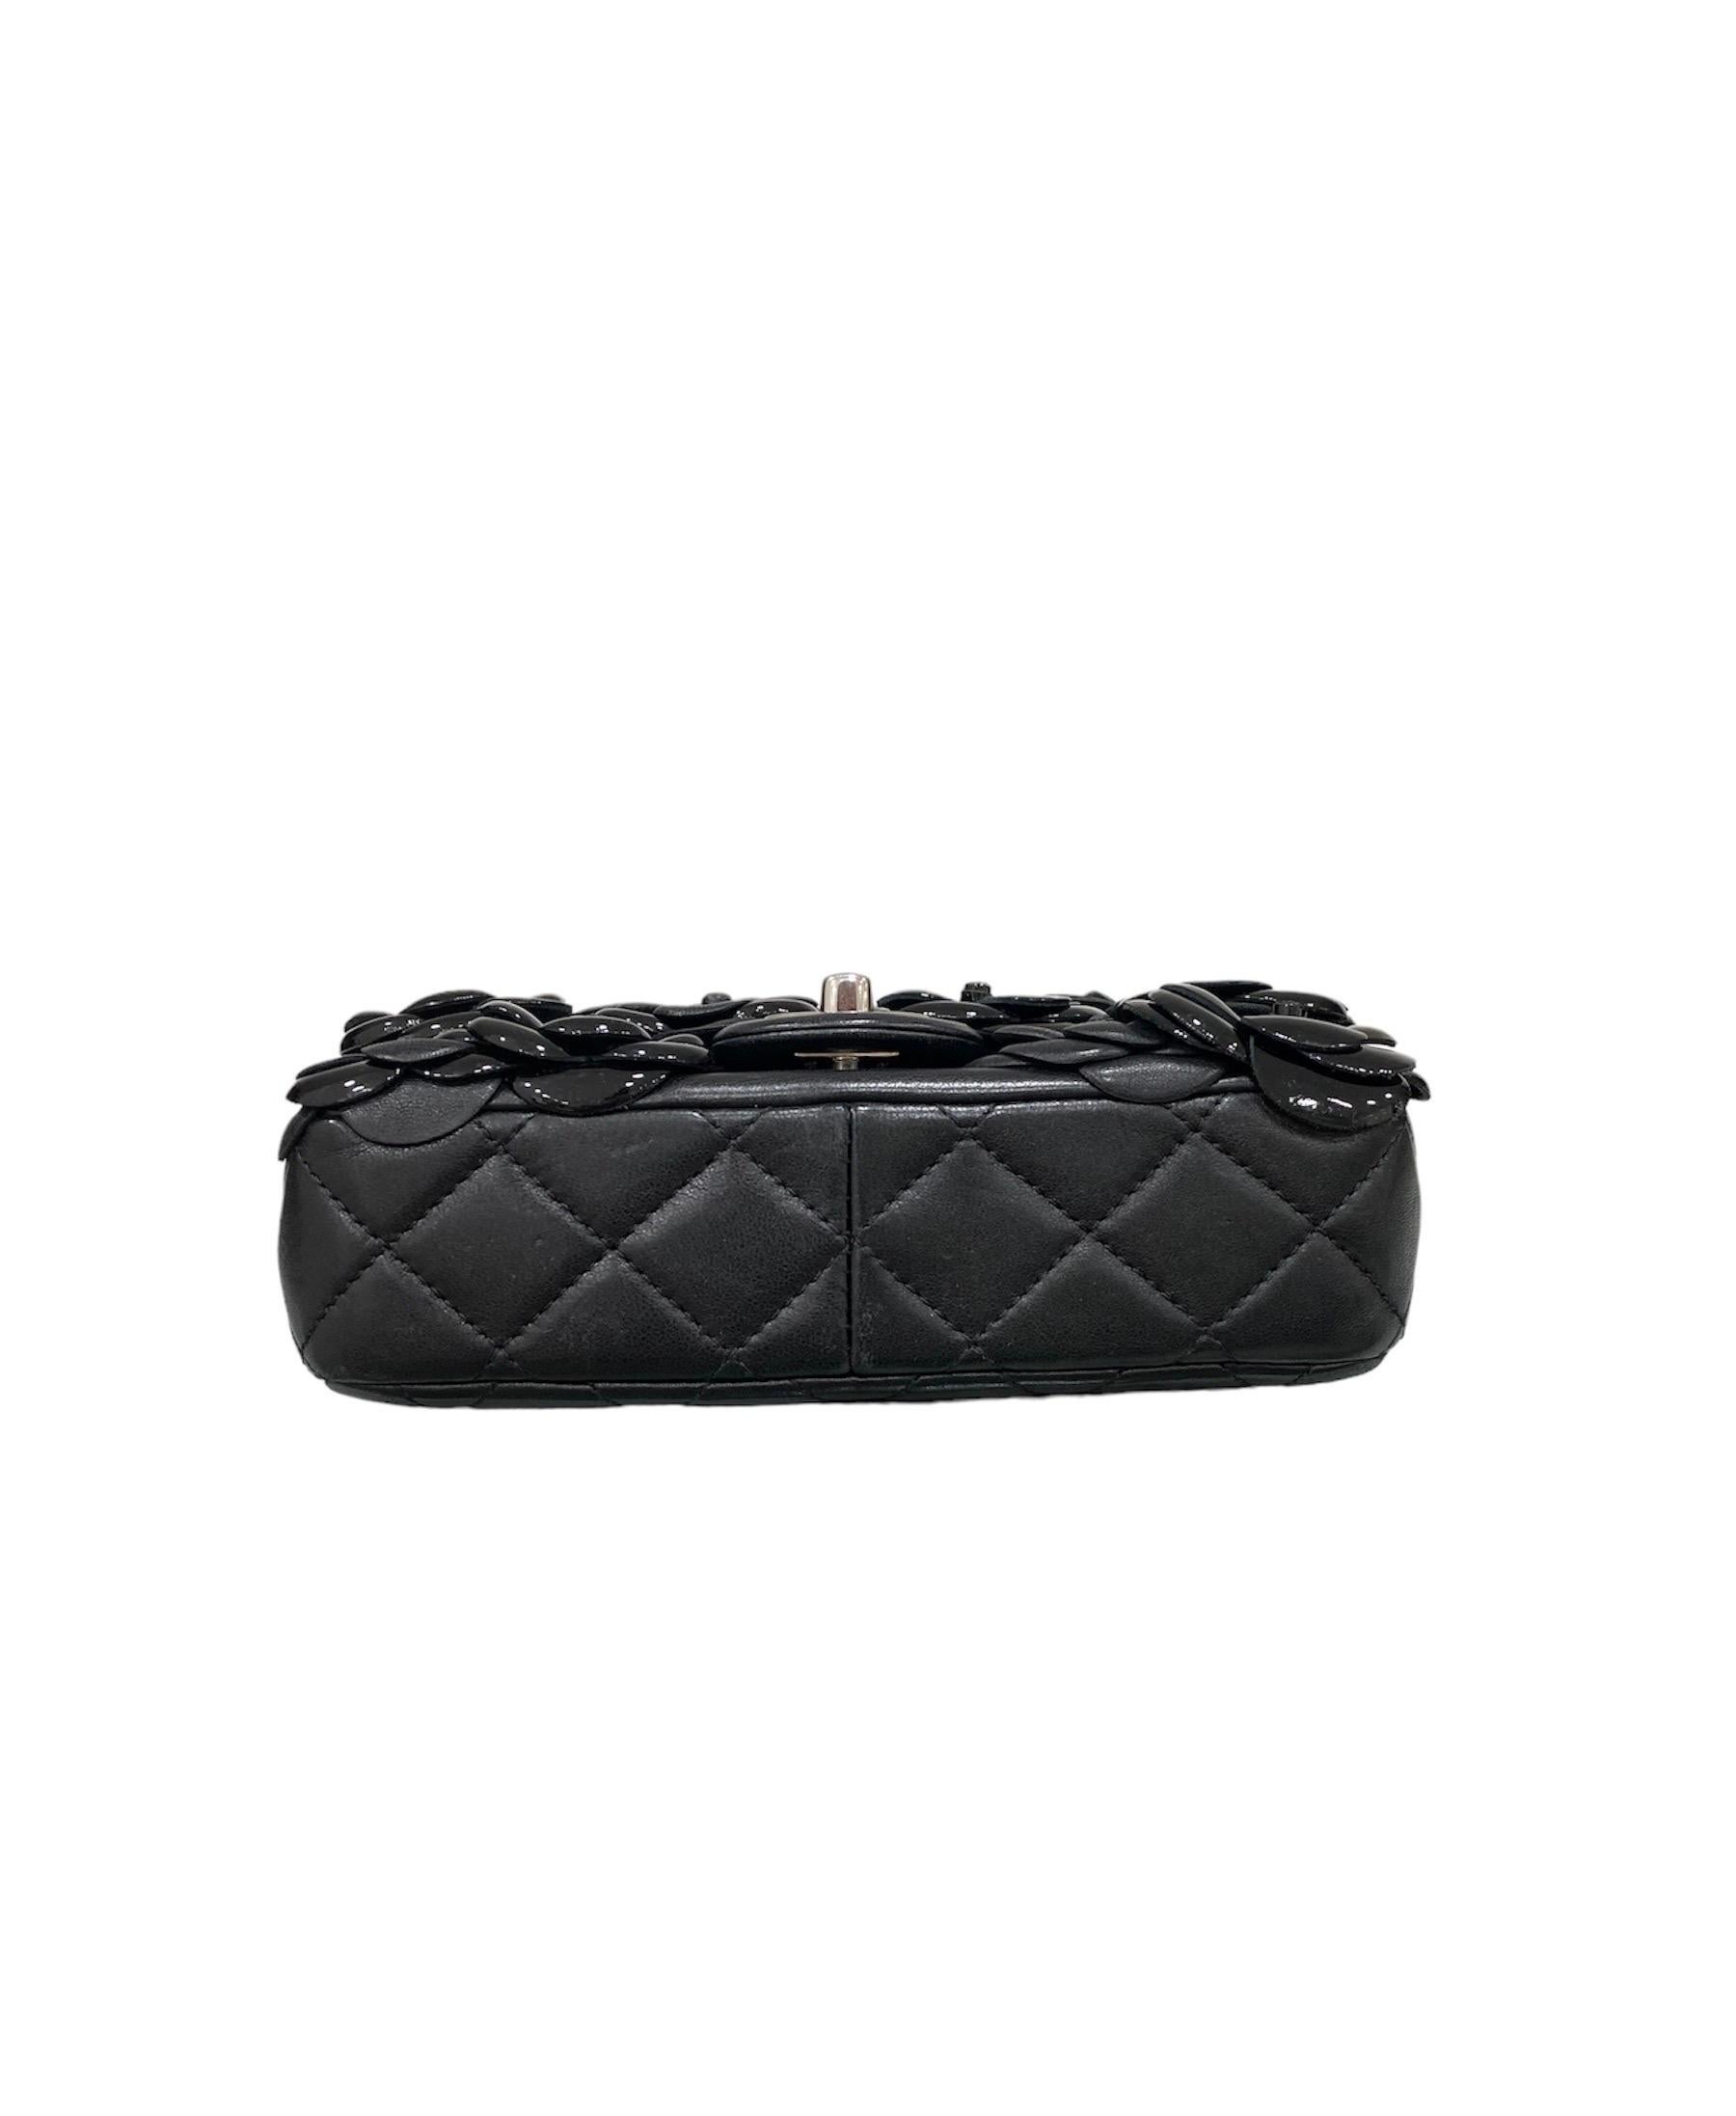 2017 Chanel Mini Camelia Black  Leather Shoulder Bag 4